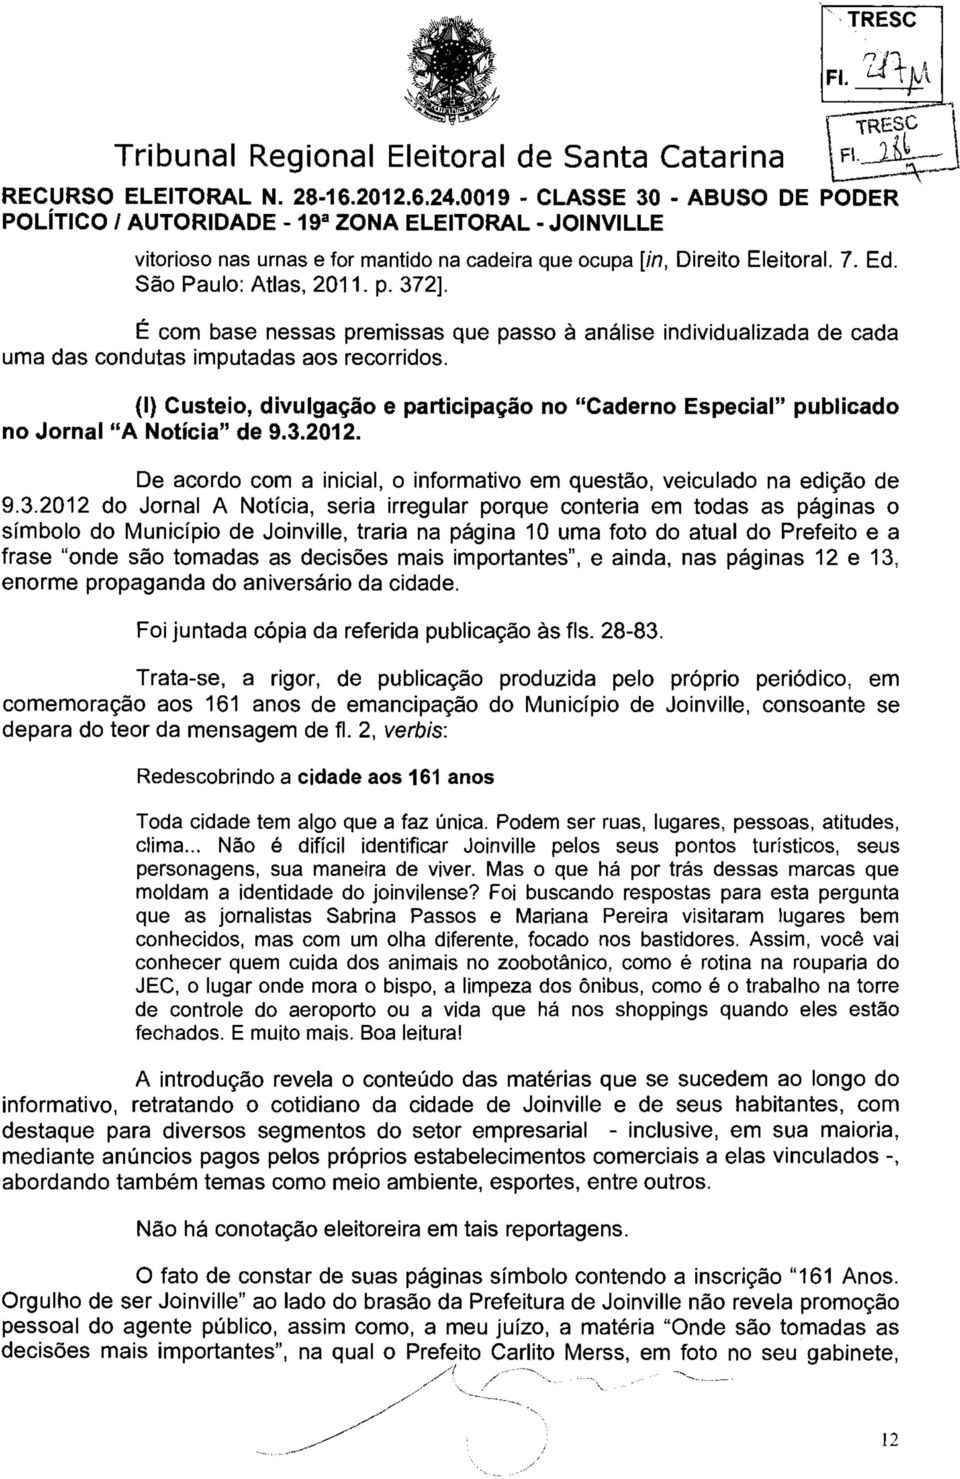 (I) Custeio, divulgação e participação no "Caderno Especial" publicado no Jornal "A Notícia" de 9.3.